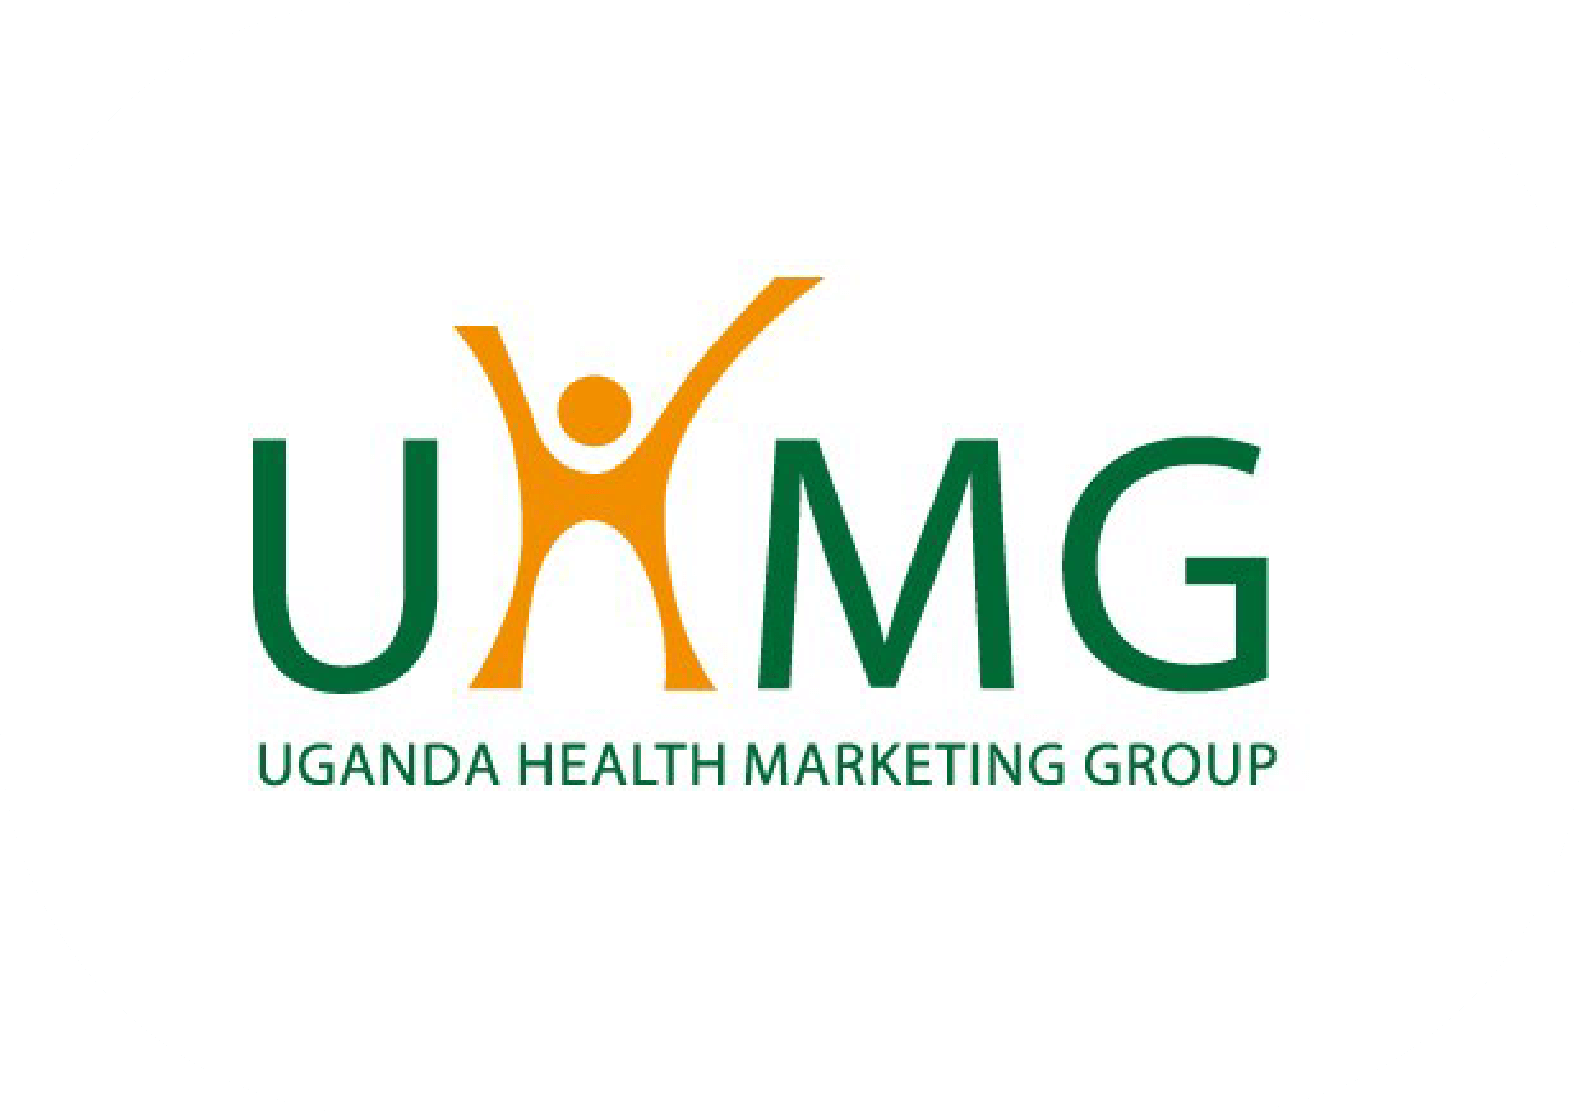 QAM Clientele-Uganda Health Marketing Group (Uhmg)